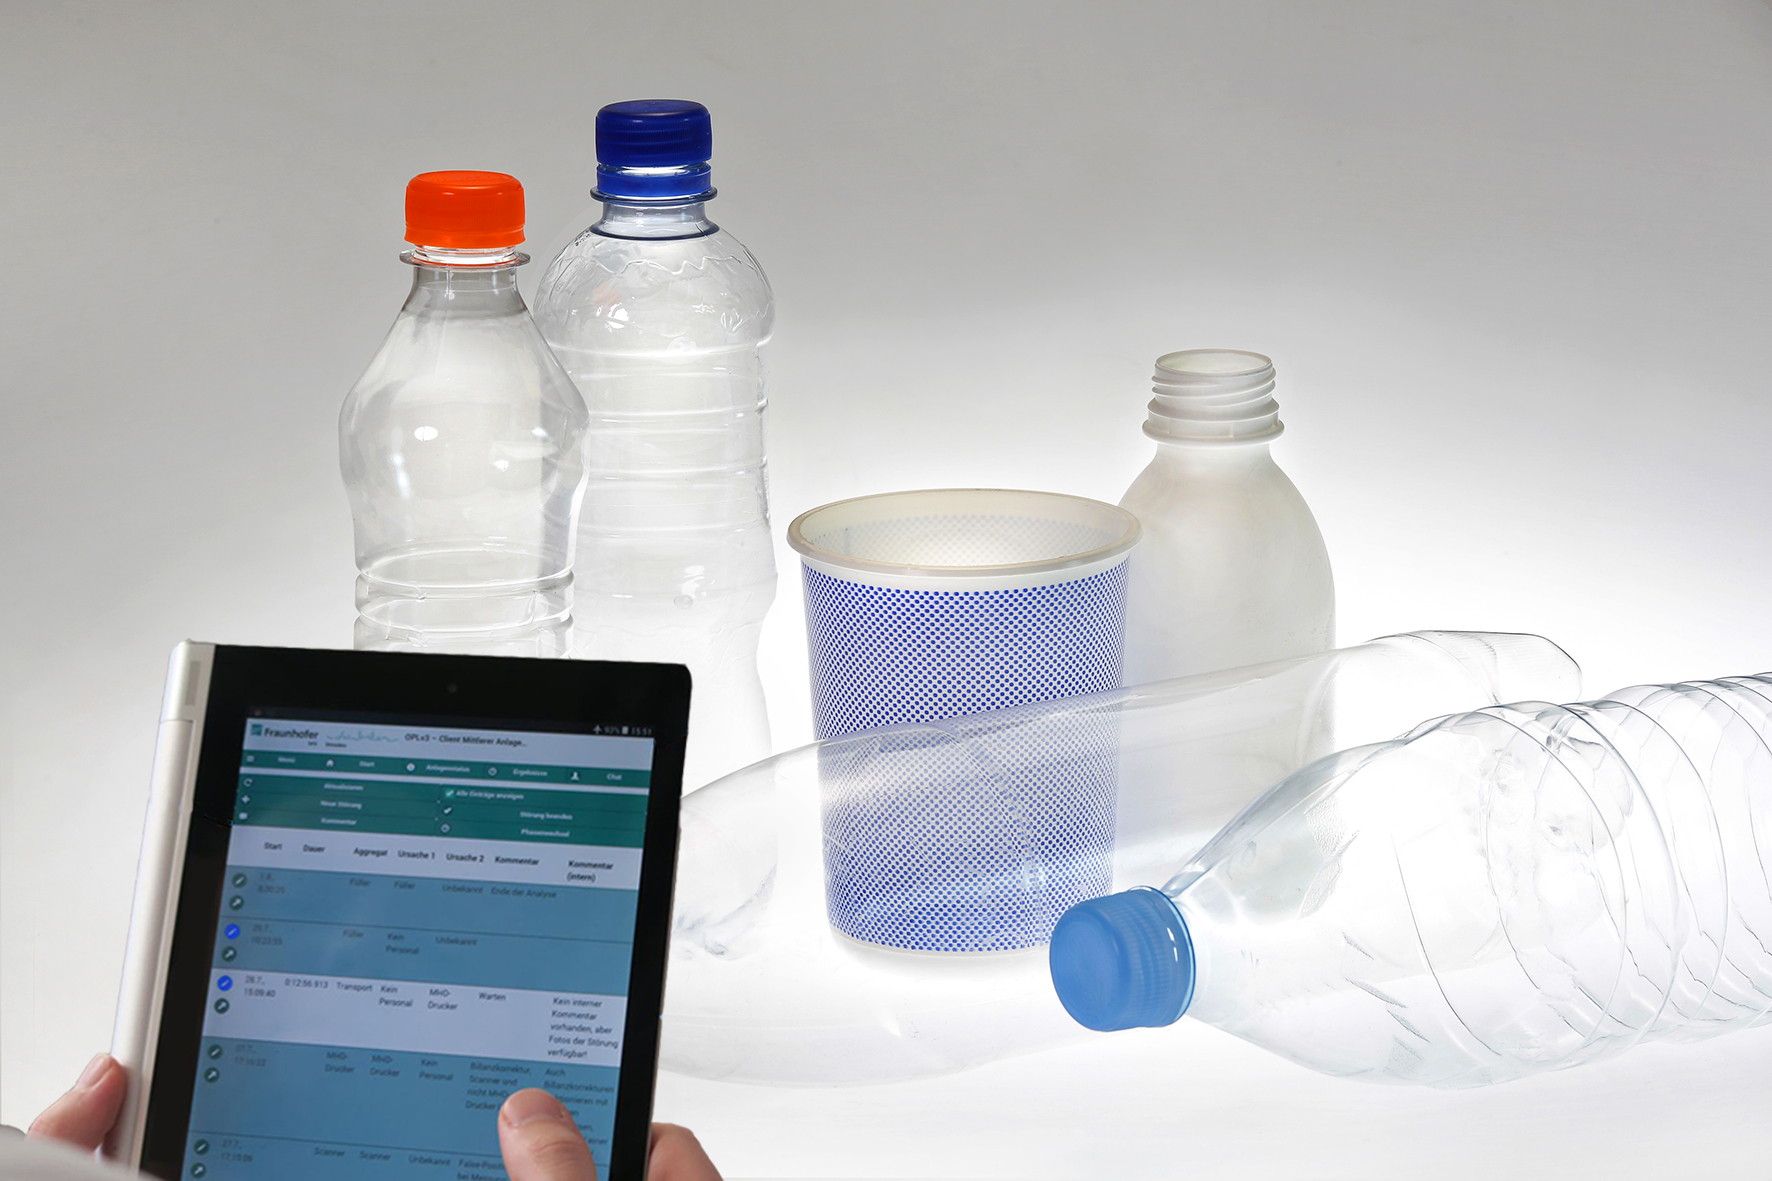 Einige Plastikflaschen stehen in einem weißen Raum, im Vordergrund bedient eine Person ein Tablet, welches Daten zu verarbeiten scheint. (C) Fraunhofer IVV